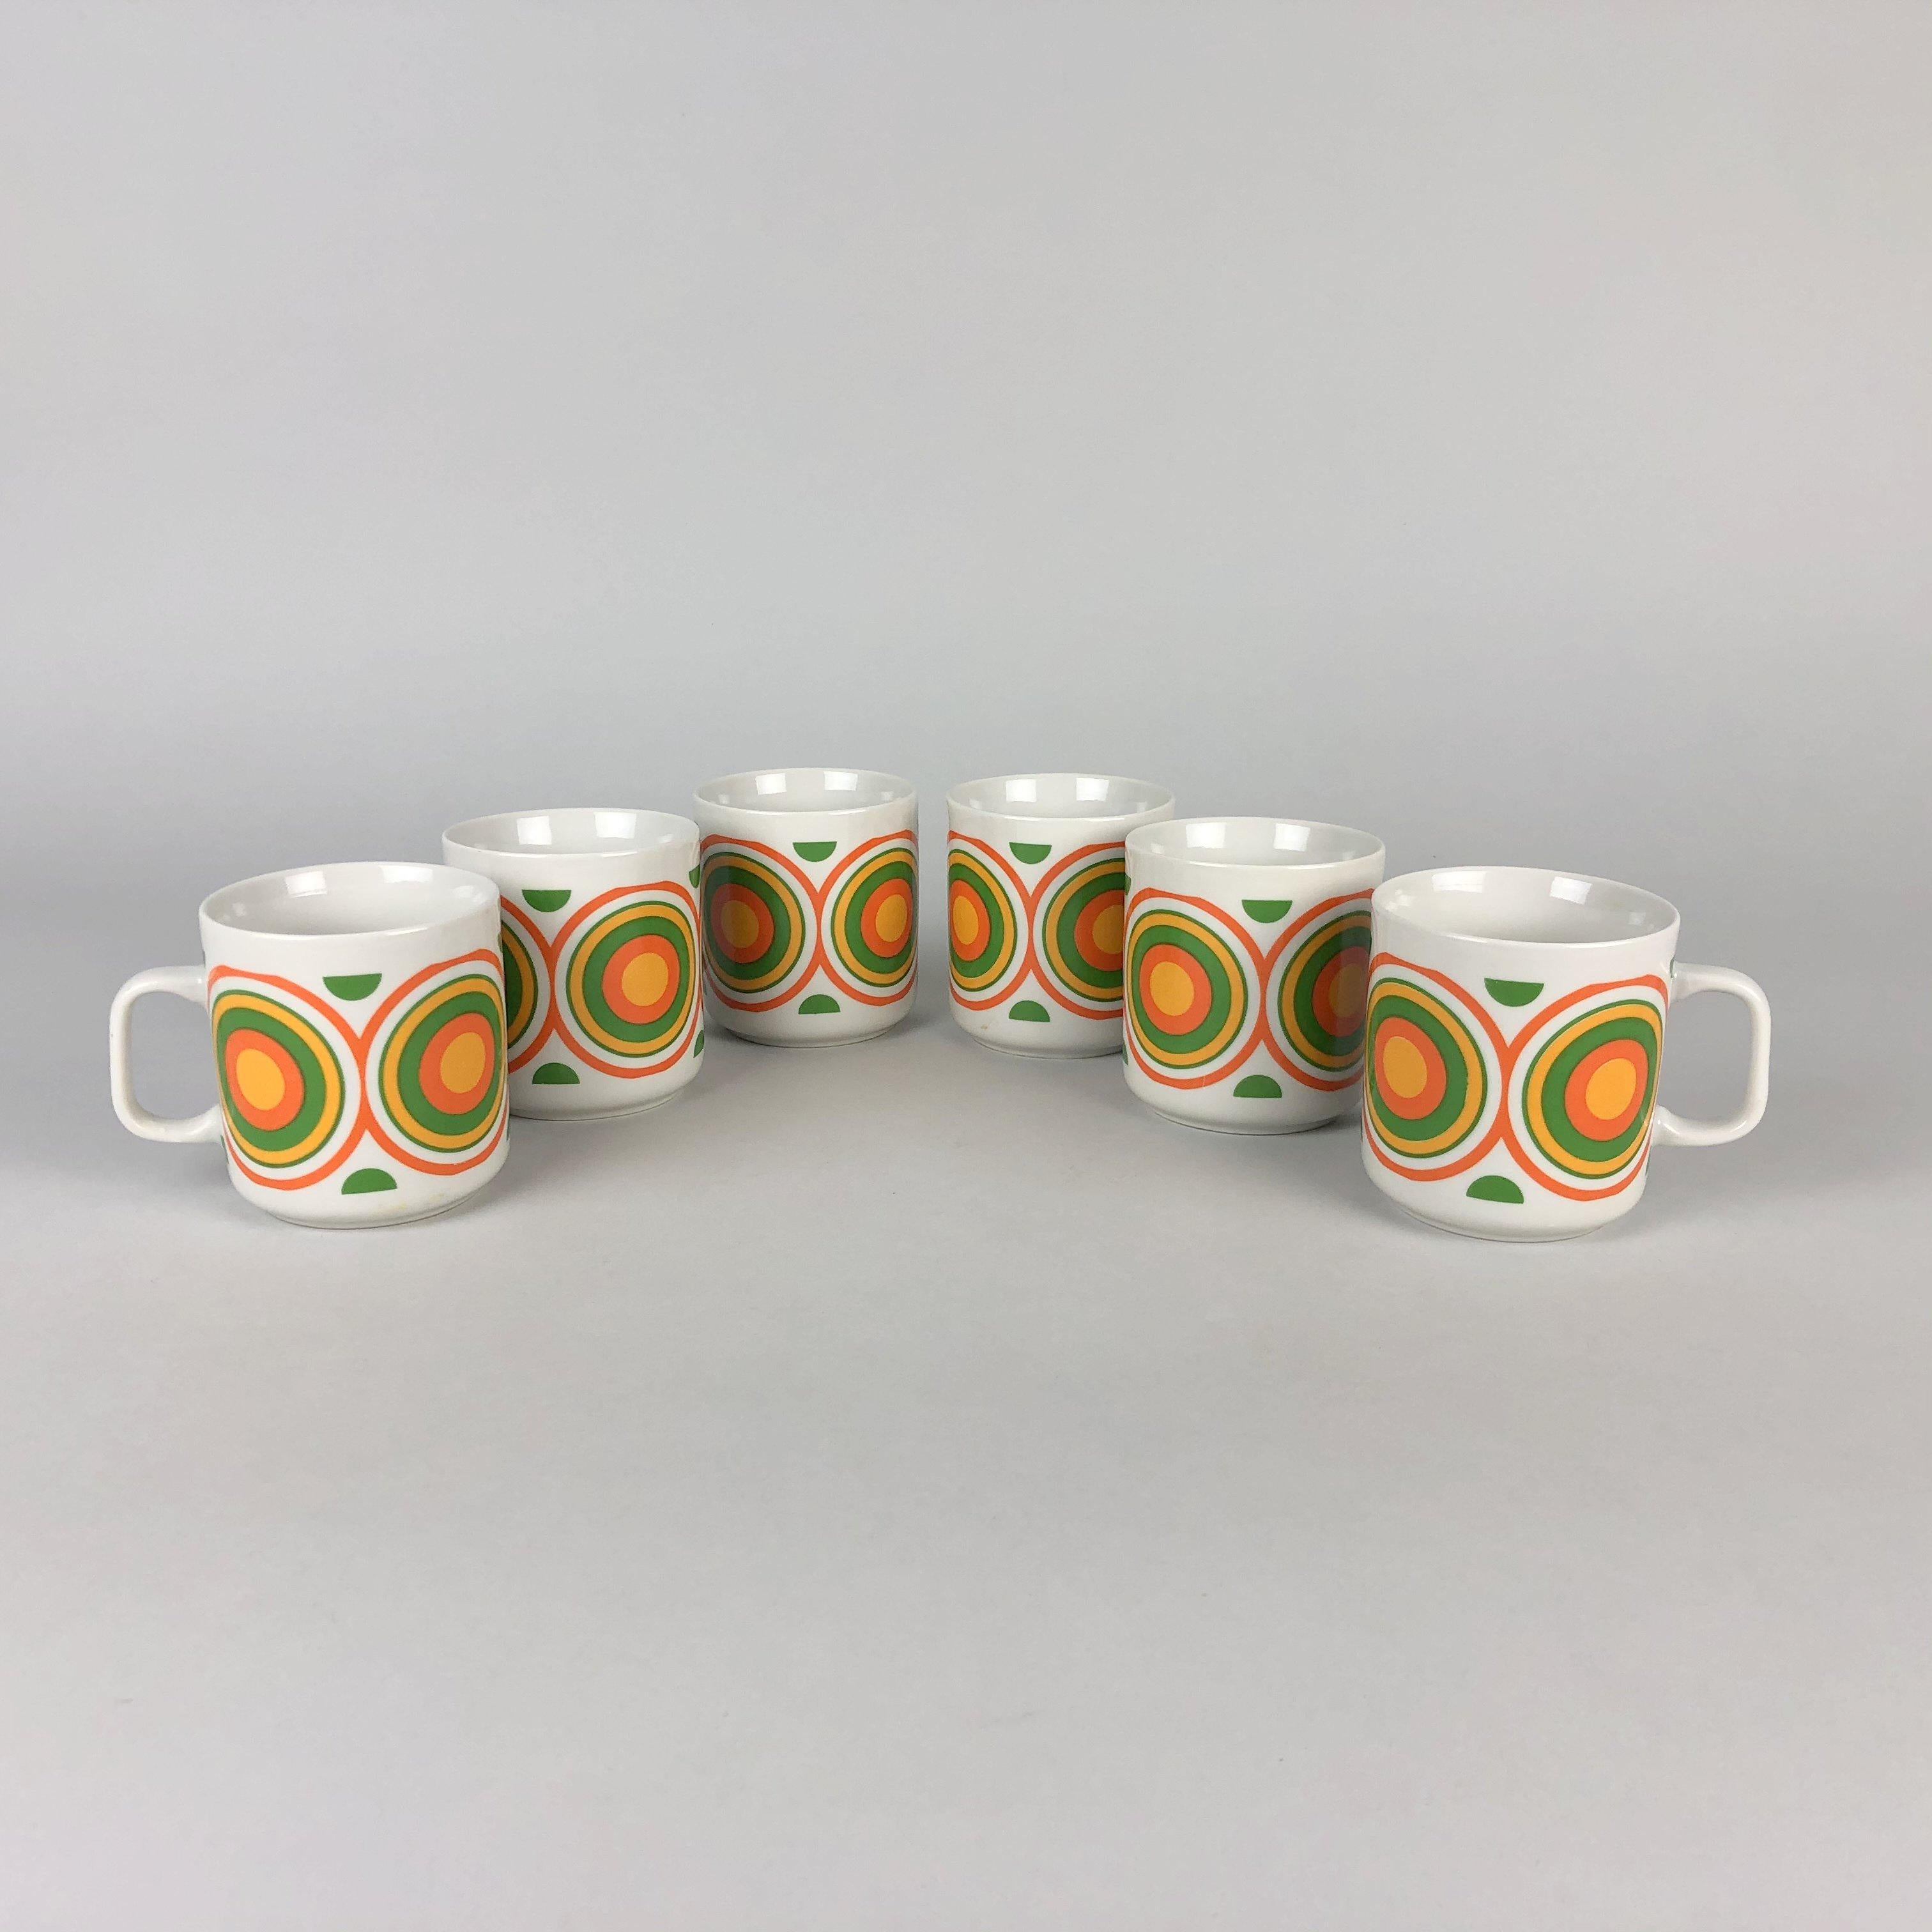 1970s flower pattern mugs